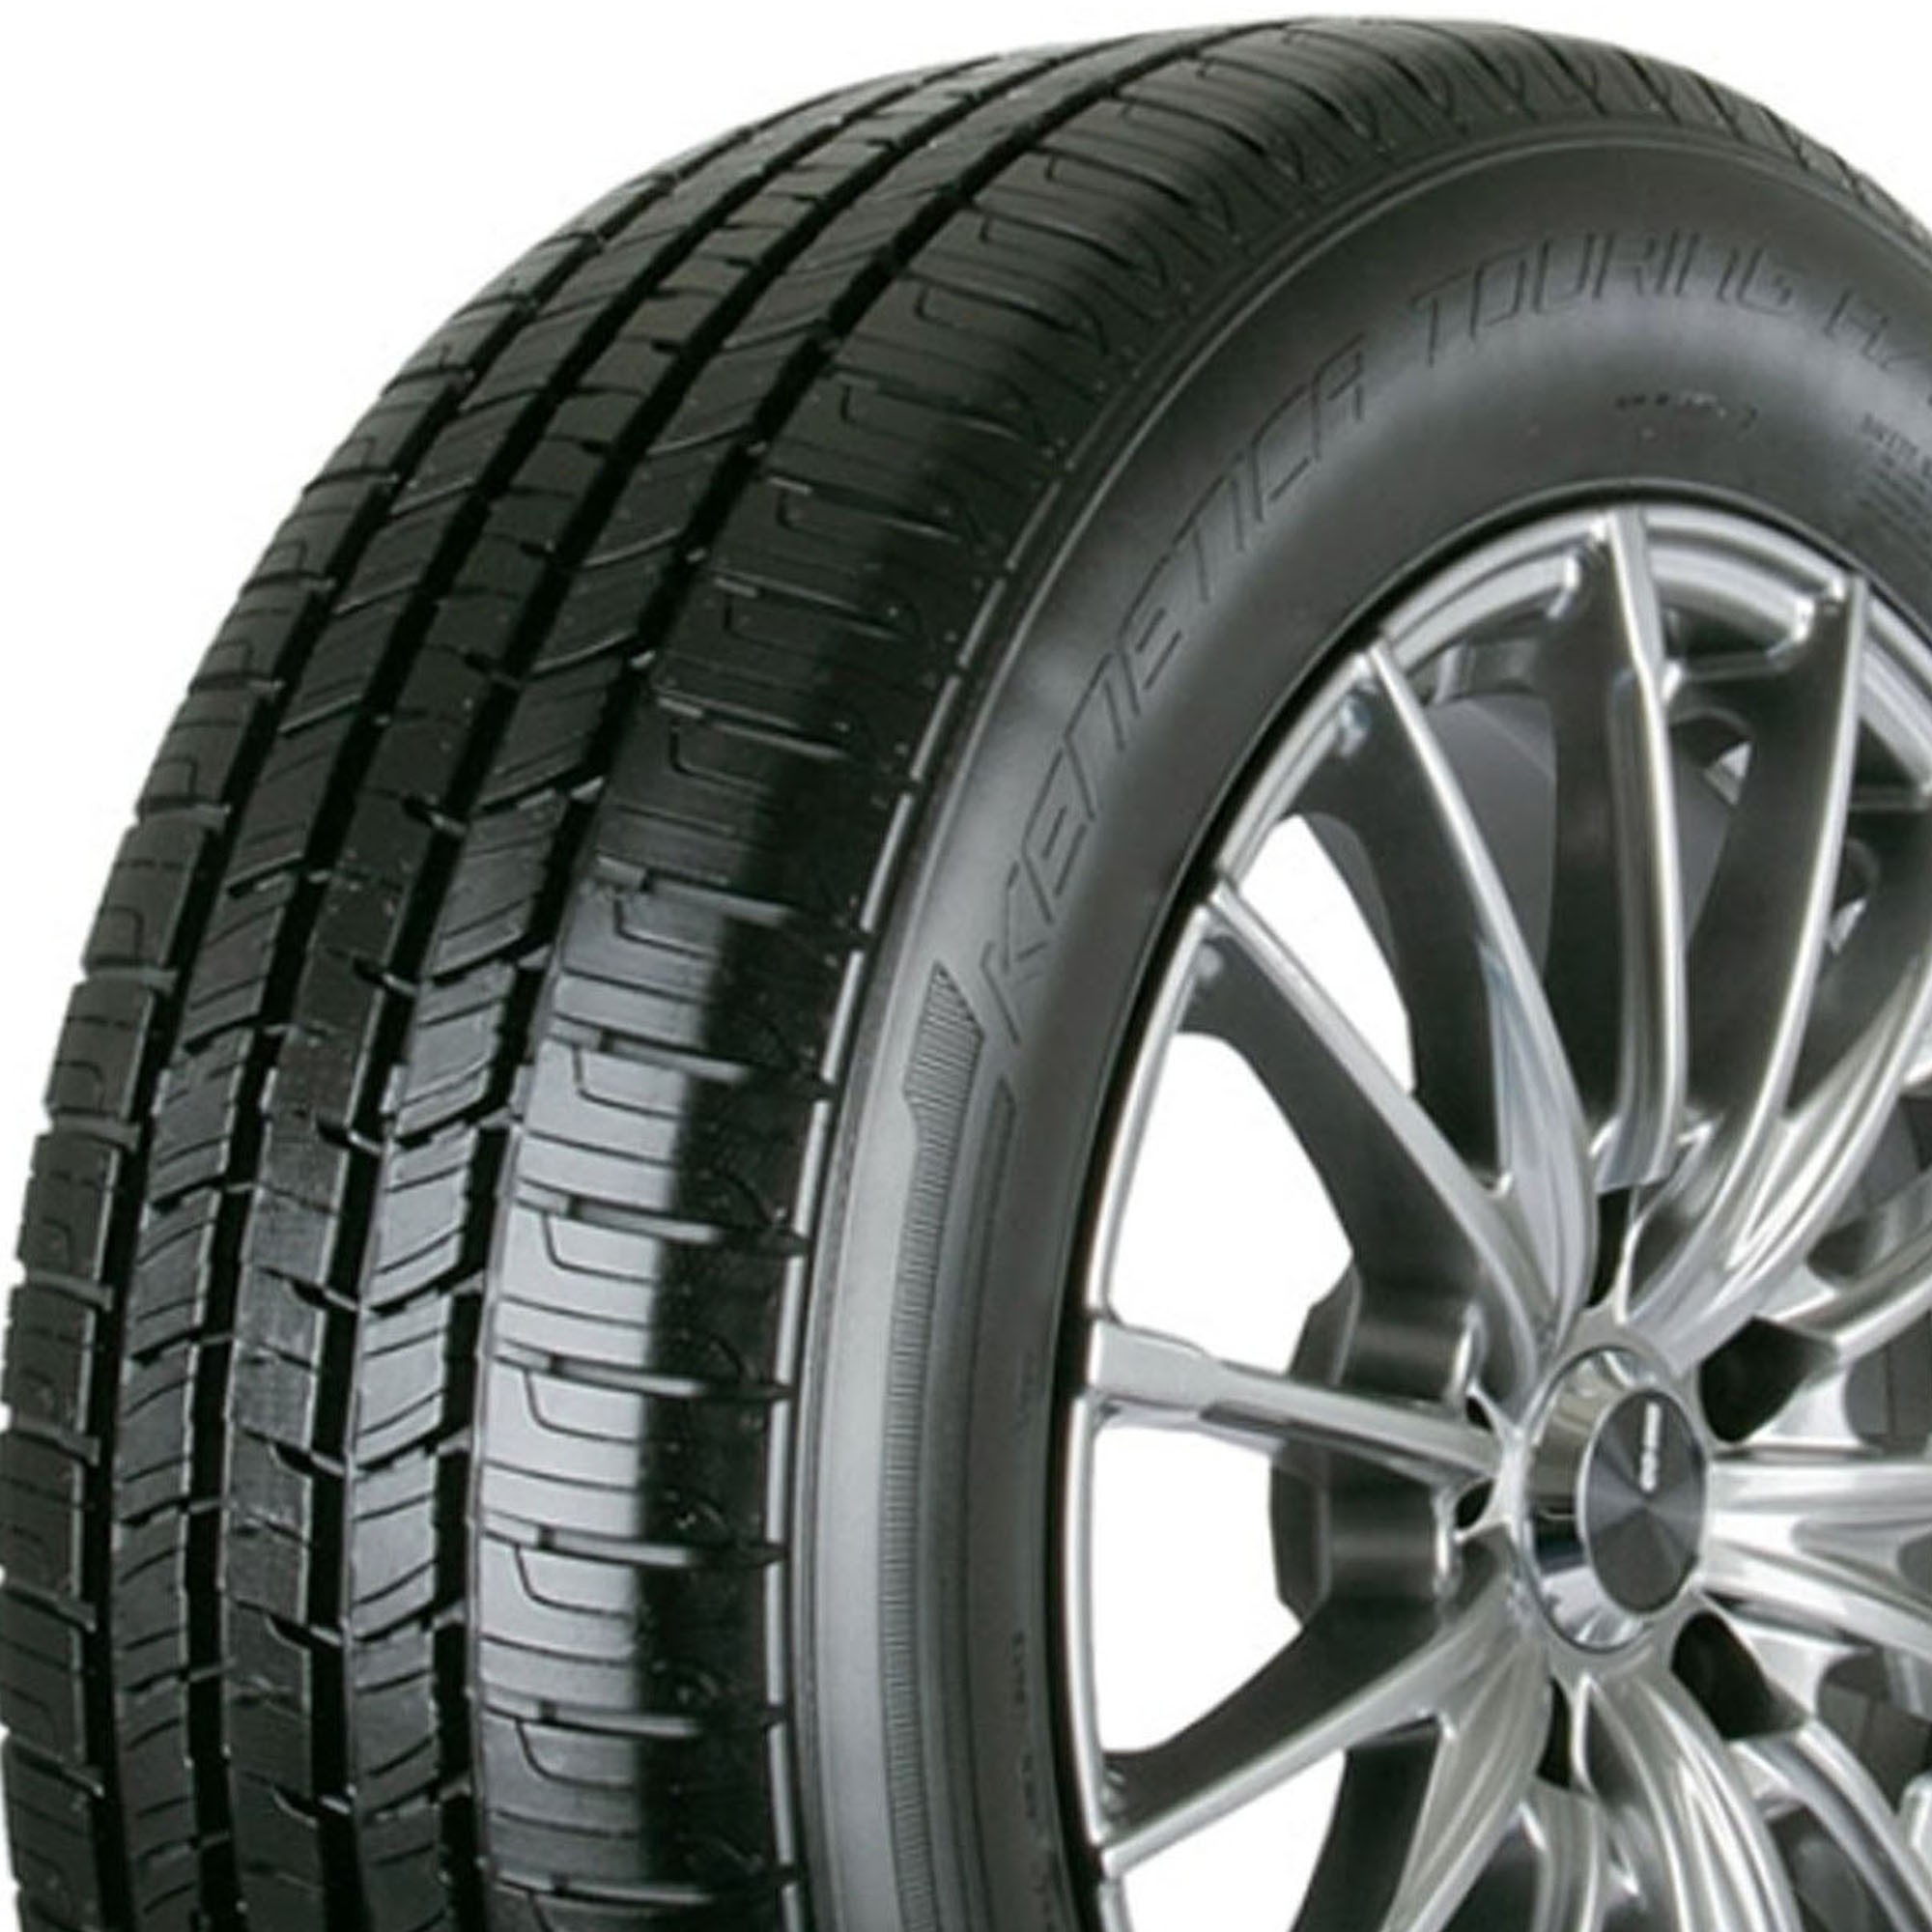 Advanta ER800 235/55R17 99H Passenger Tire Fits: 2014-17 Ford